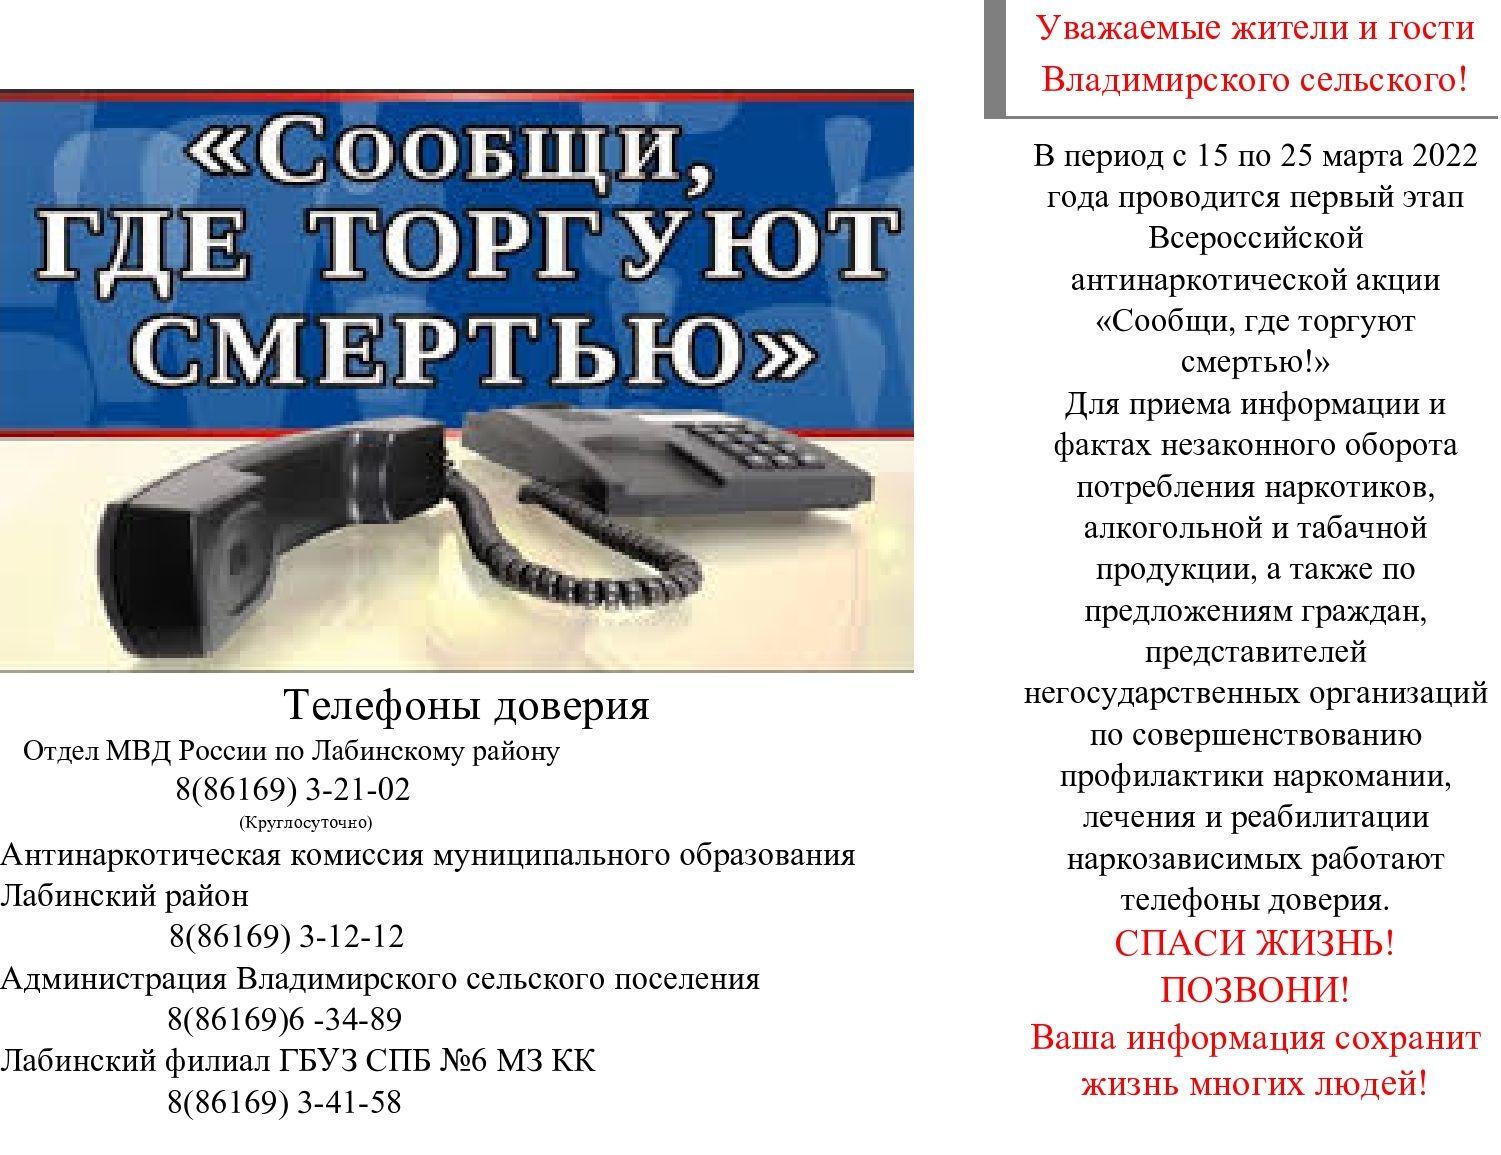 Телефоны доверия АНТИНАРКО page0001